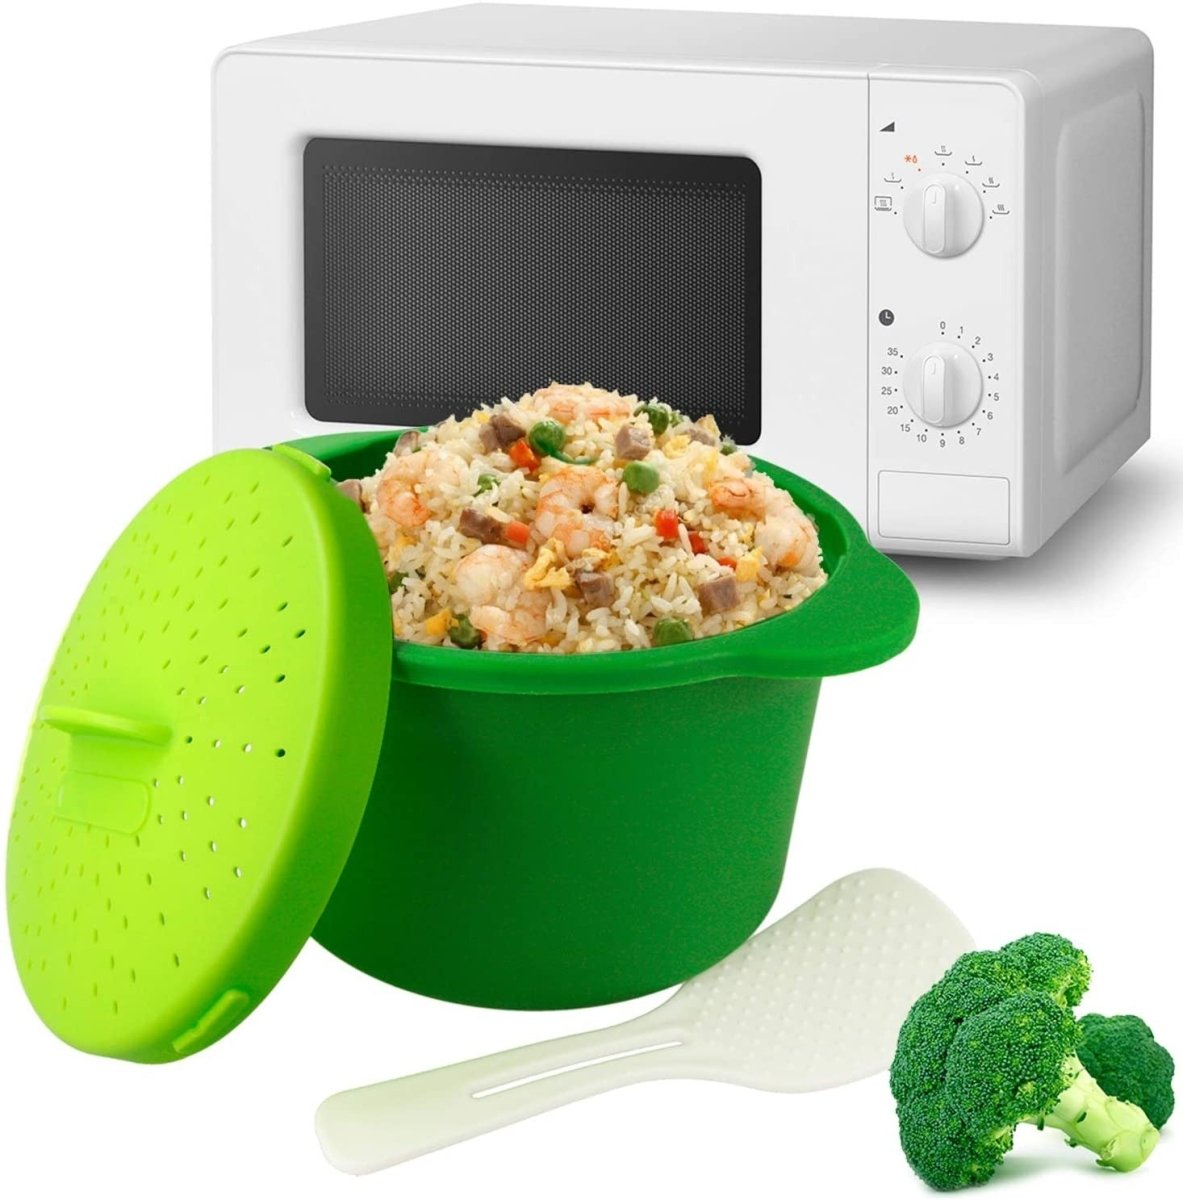 Utensilios para cocinar en microondas: arroz, pasta y más